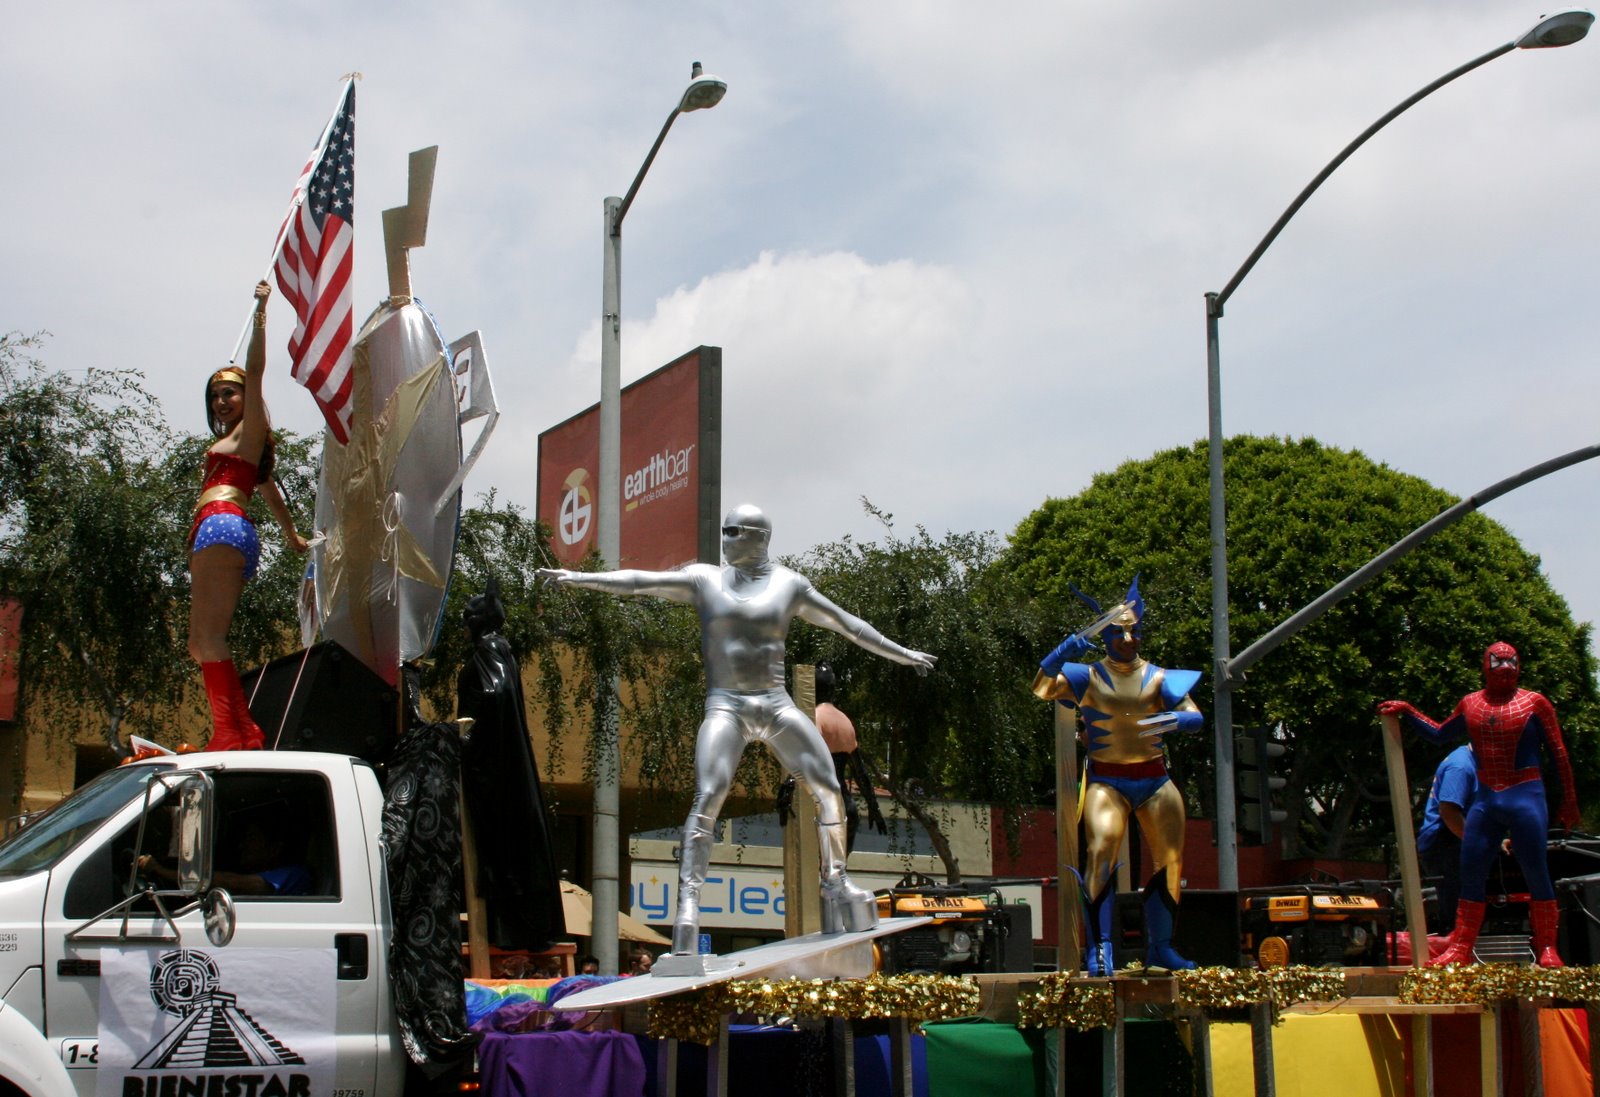 [West+Hollywood+gay+pride+parade+2009+SUPERHERO+FLOAT.JPG]